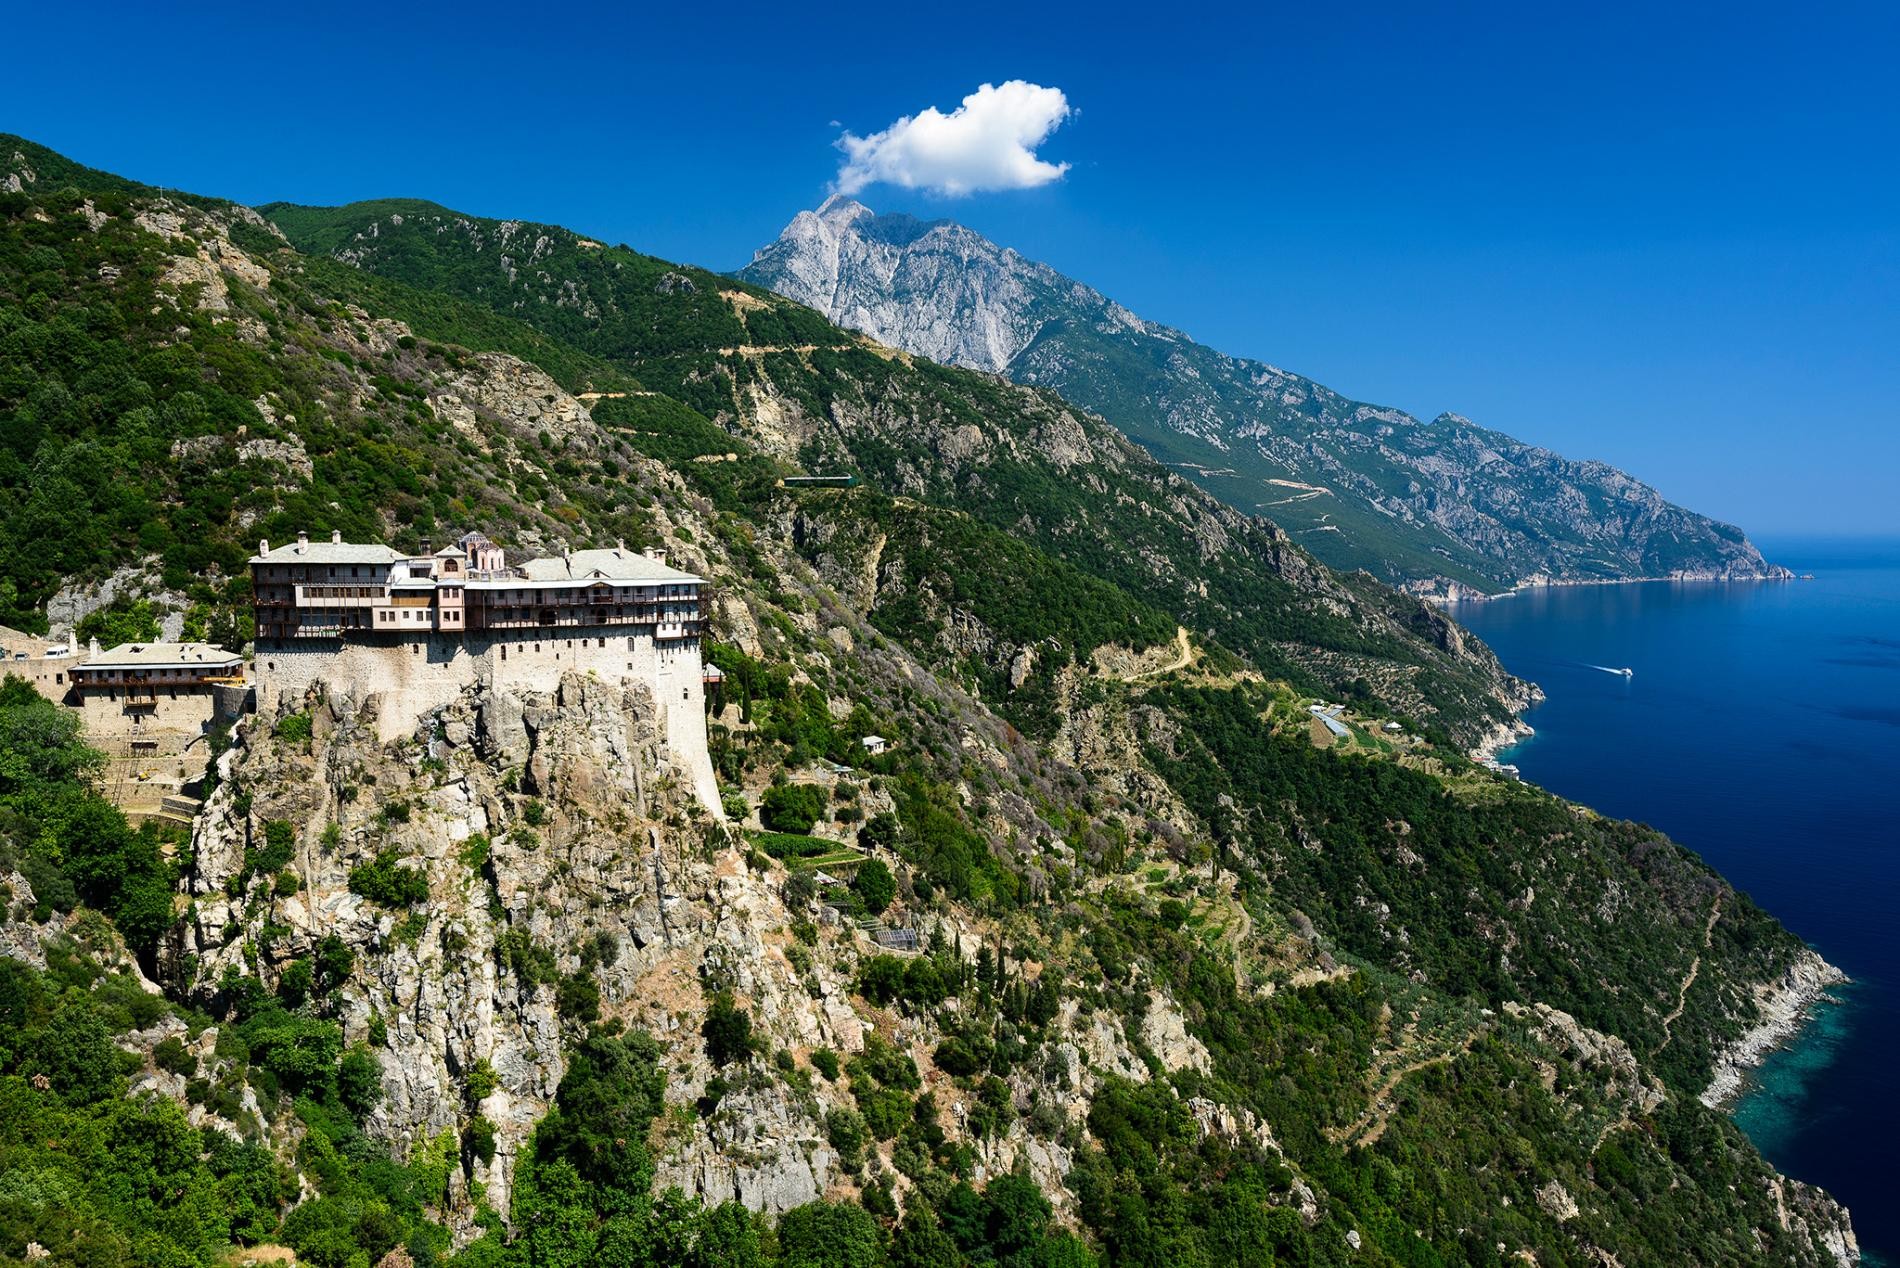 Святая гора Афон – центр православного христианства с 20 монастырями. Фотограф Хартмут Криниц